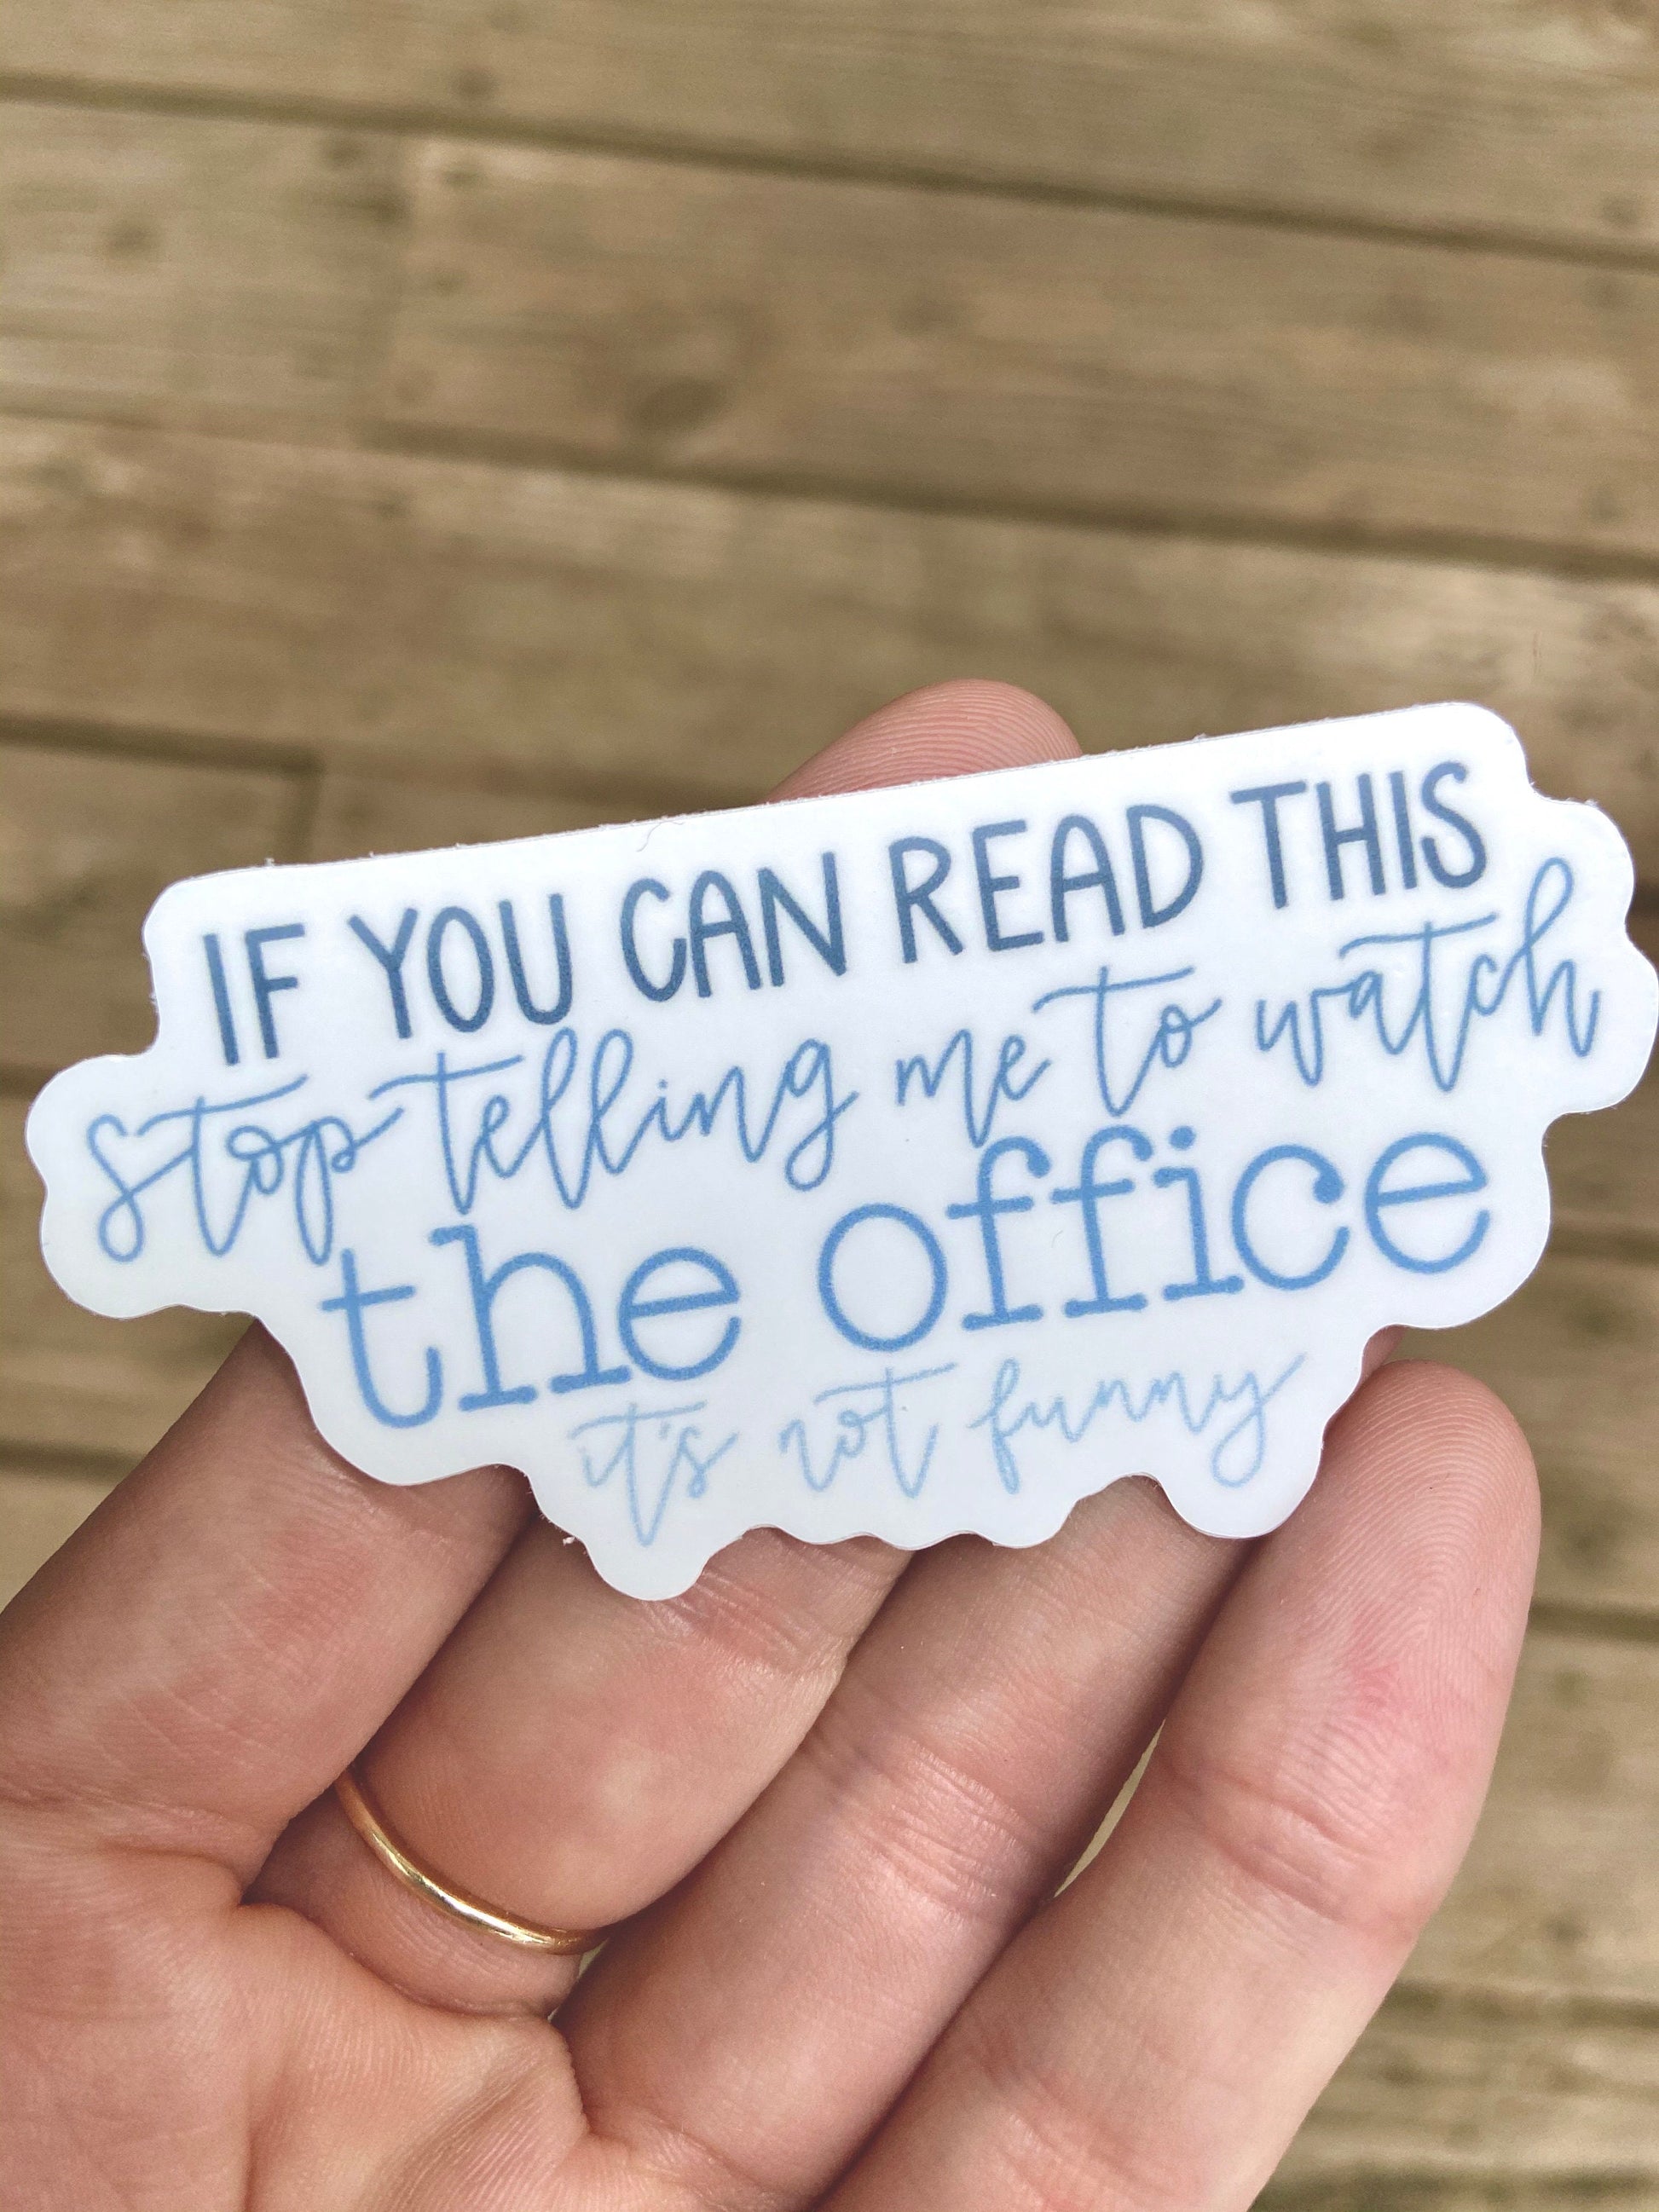 The Office Sticker // Anti Office Sticker // The office sucks sticker // vinyl sticker